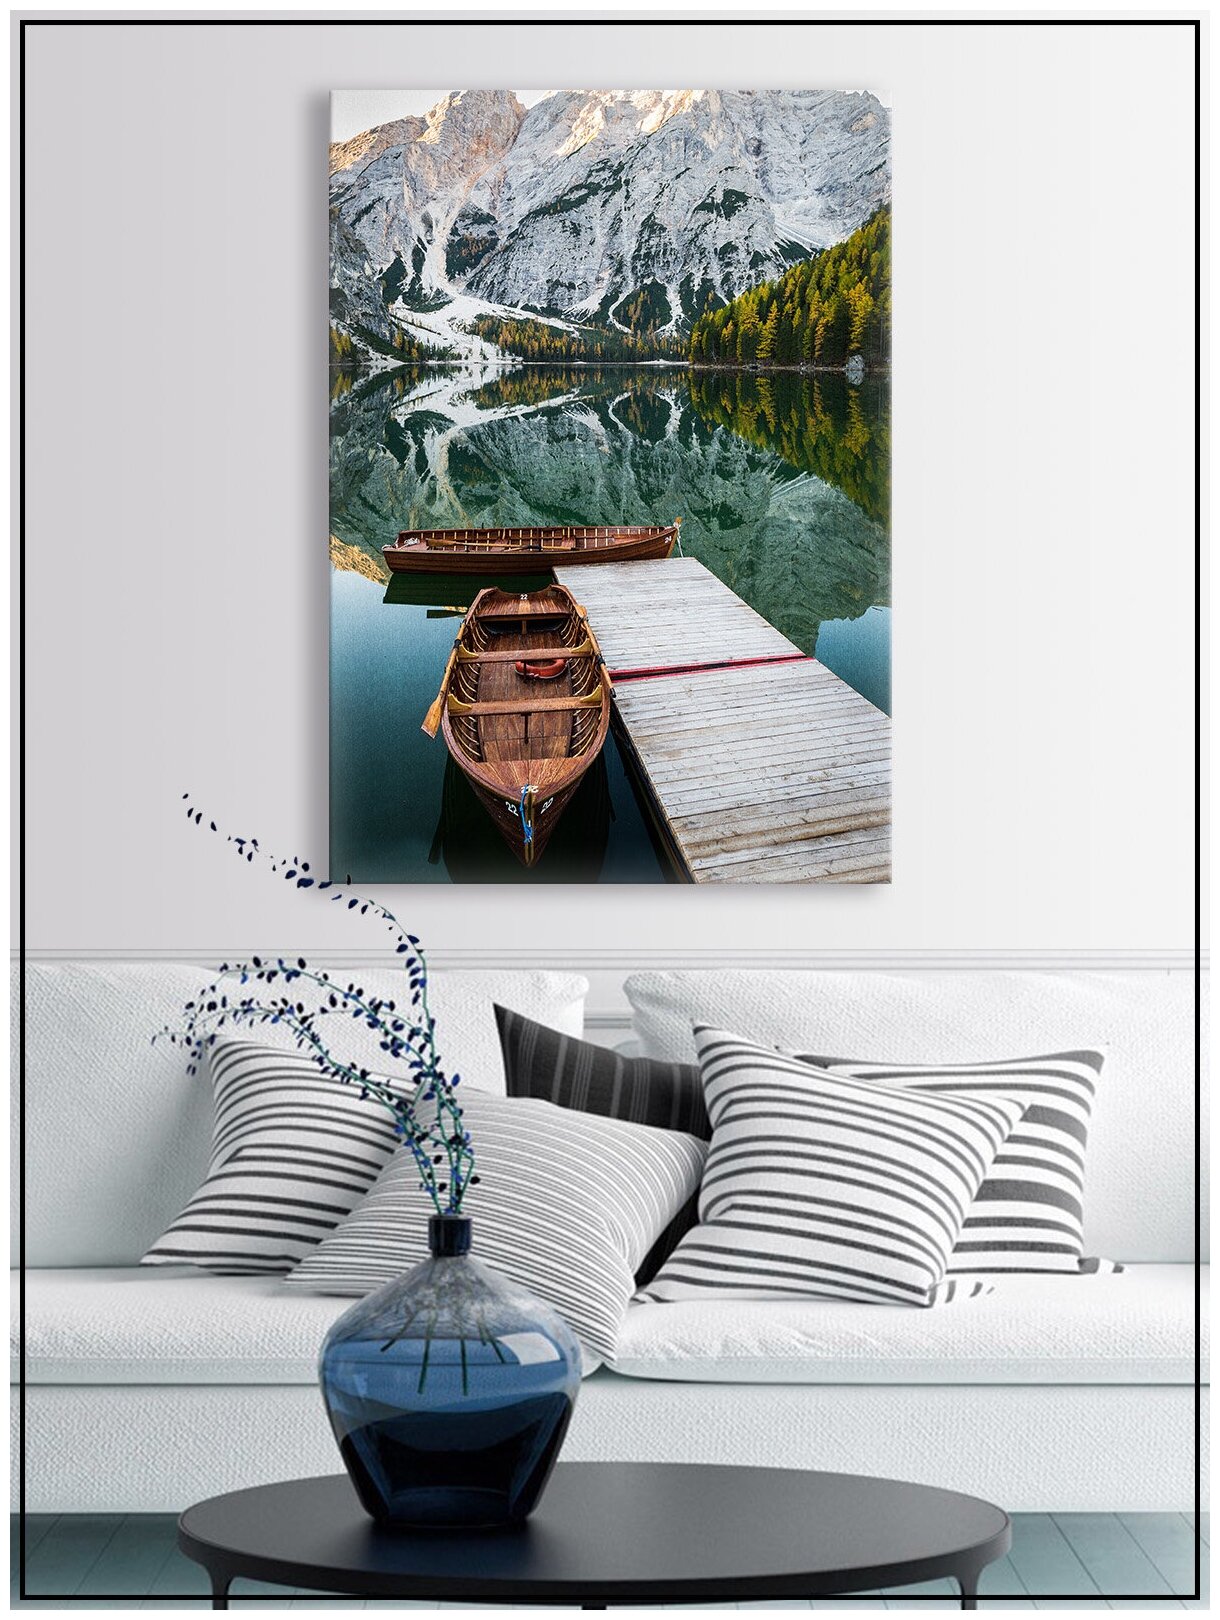 Картина для интерьера на натуральном хлопковом холсте "Лодка у горного озера", 30*40см, холст на подрамнике, картина в подарок для дома